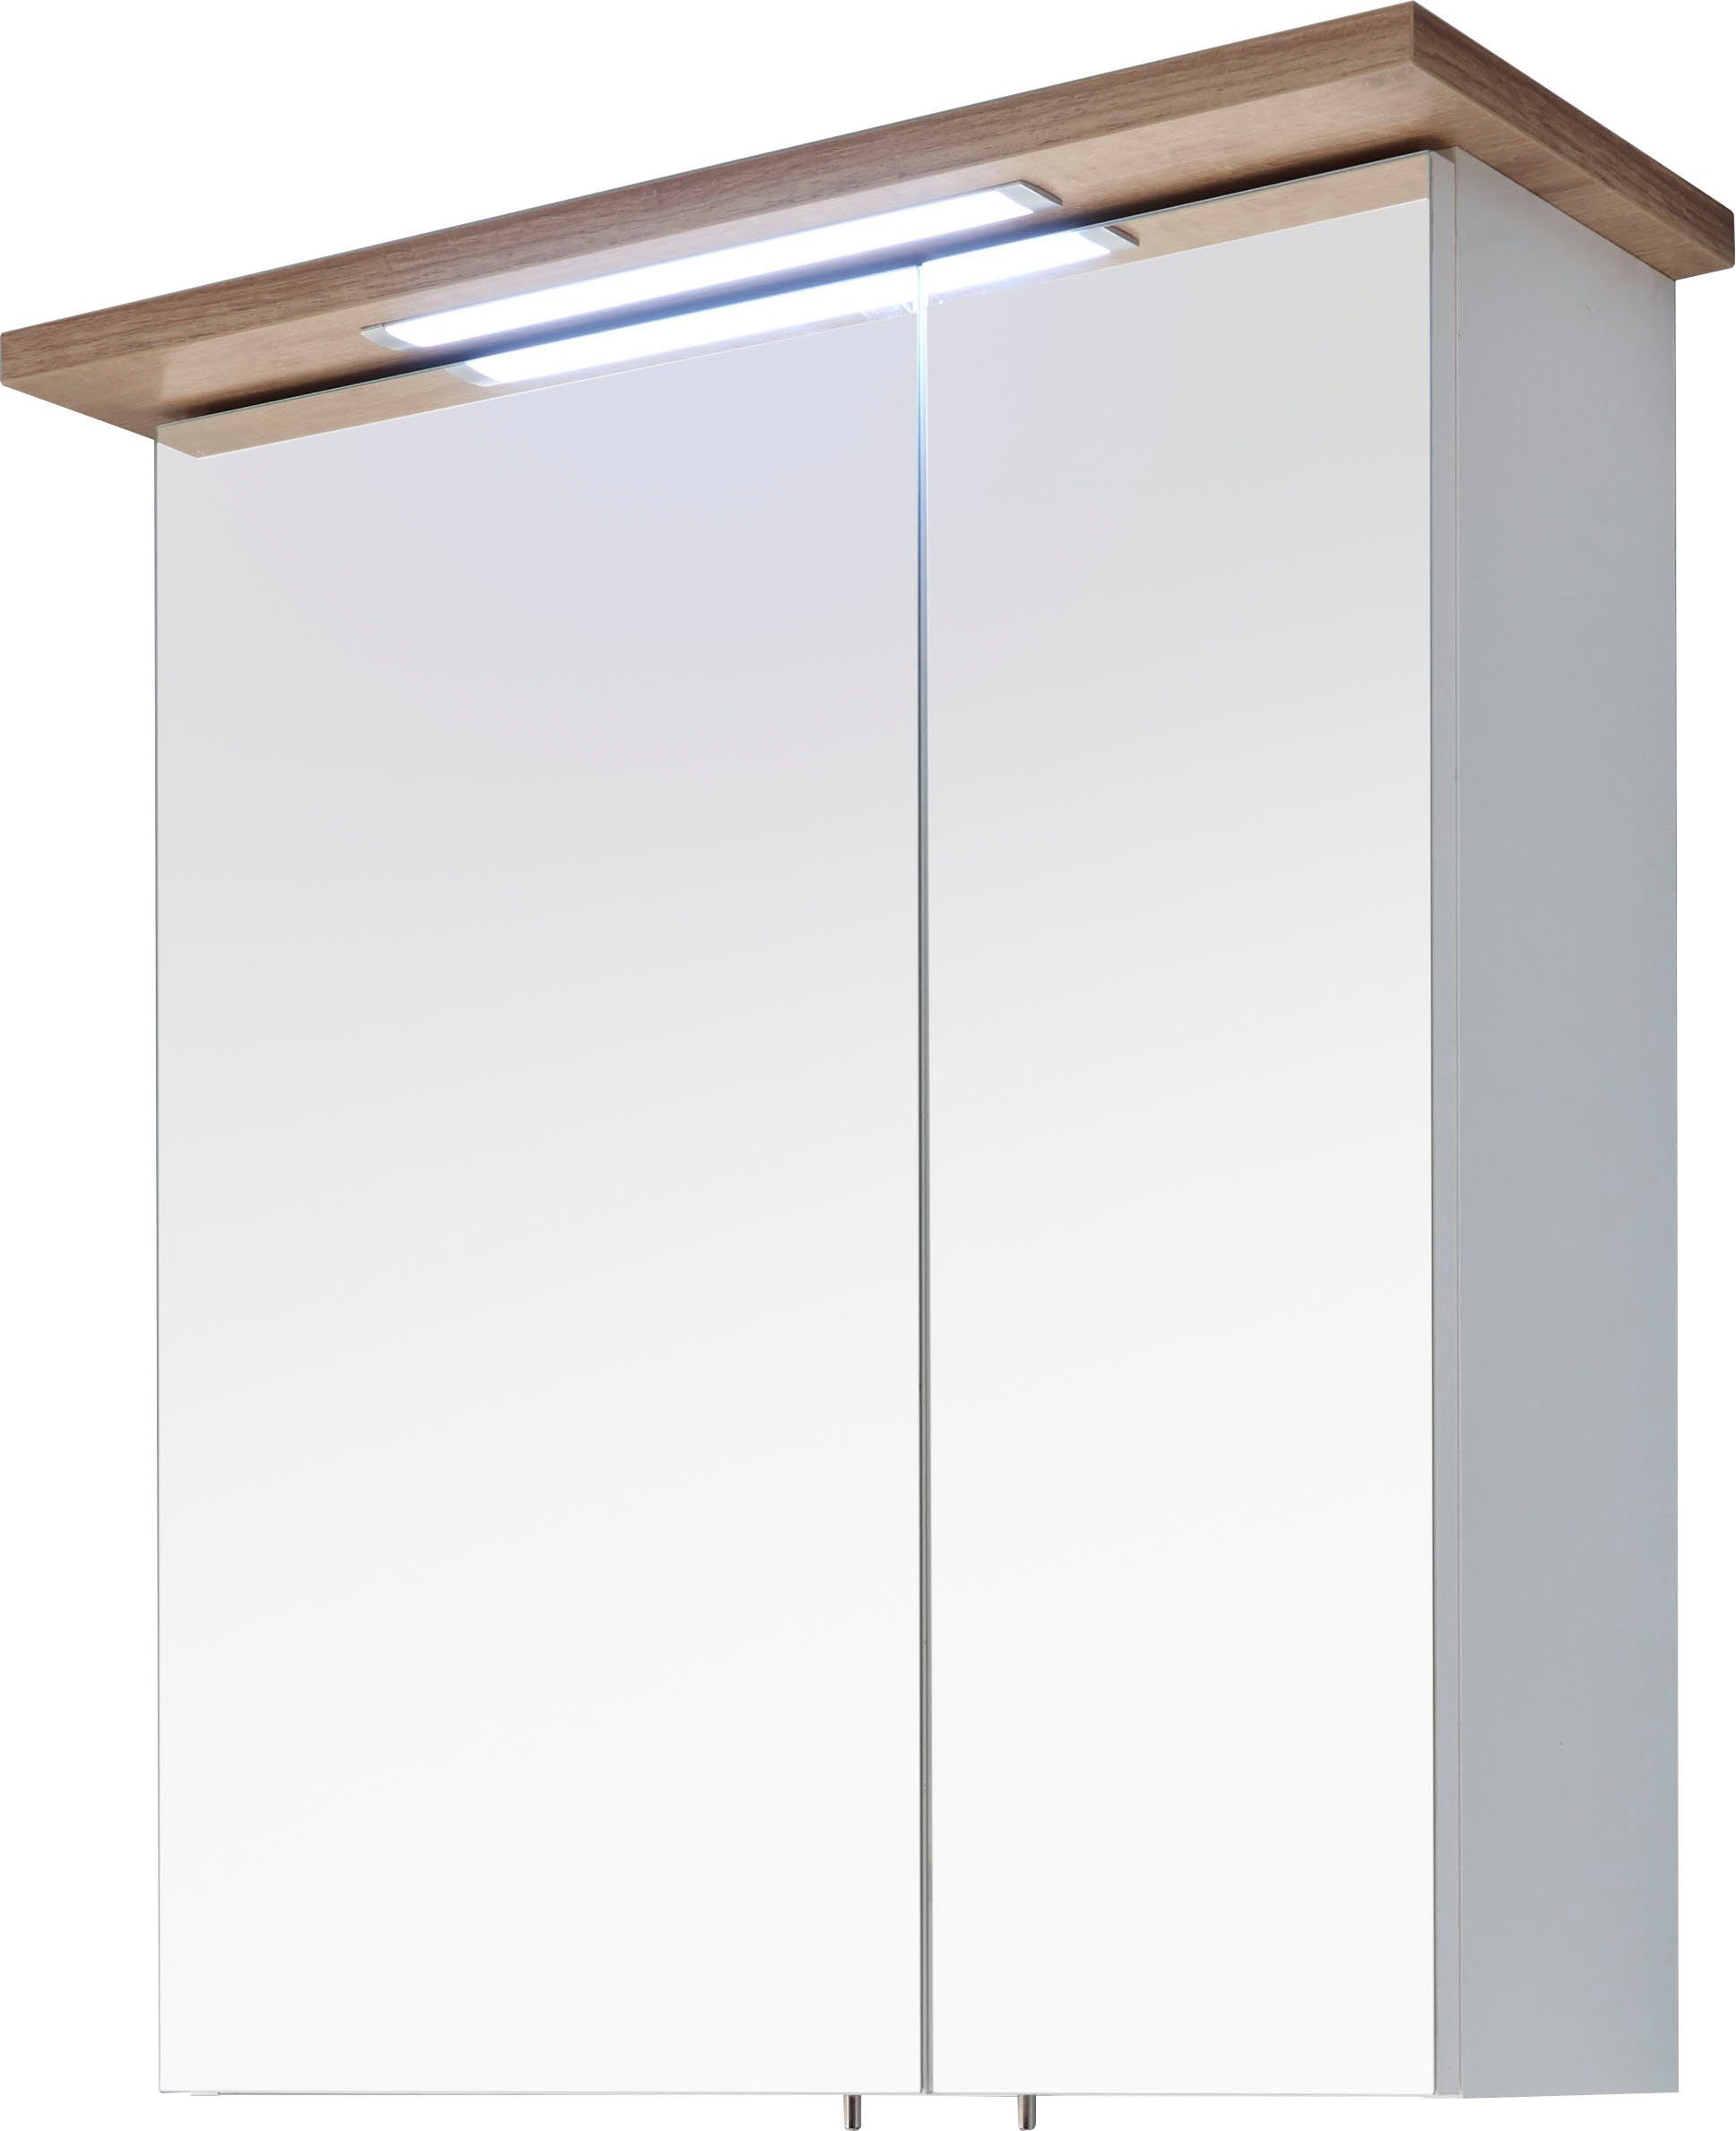 Saphir Spiegelkast Quickset 923/947 Breedte 60 cm, 2-deurs, verzonken ledverlichting, stekkerdoos